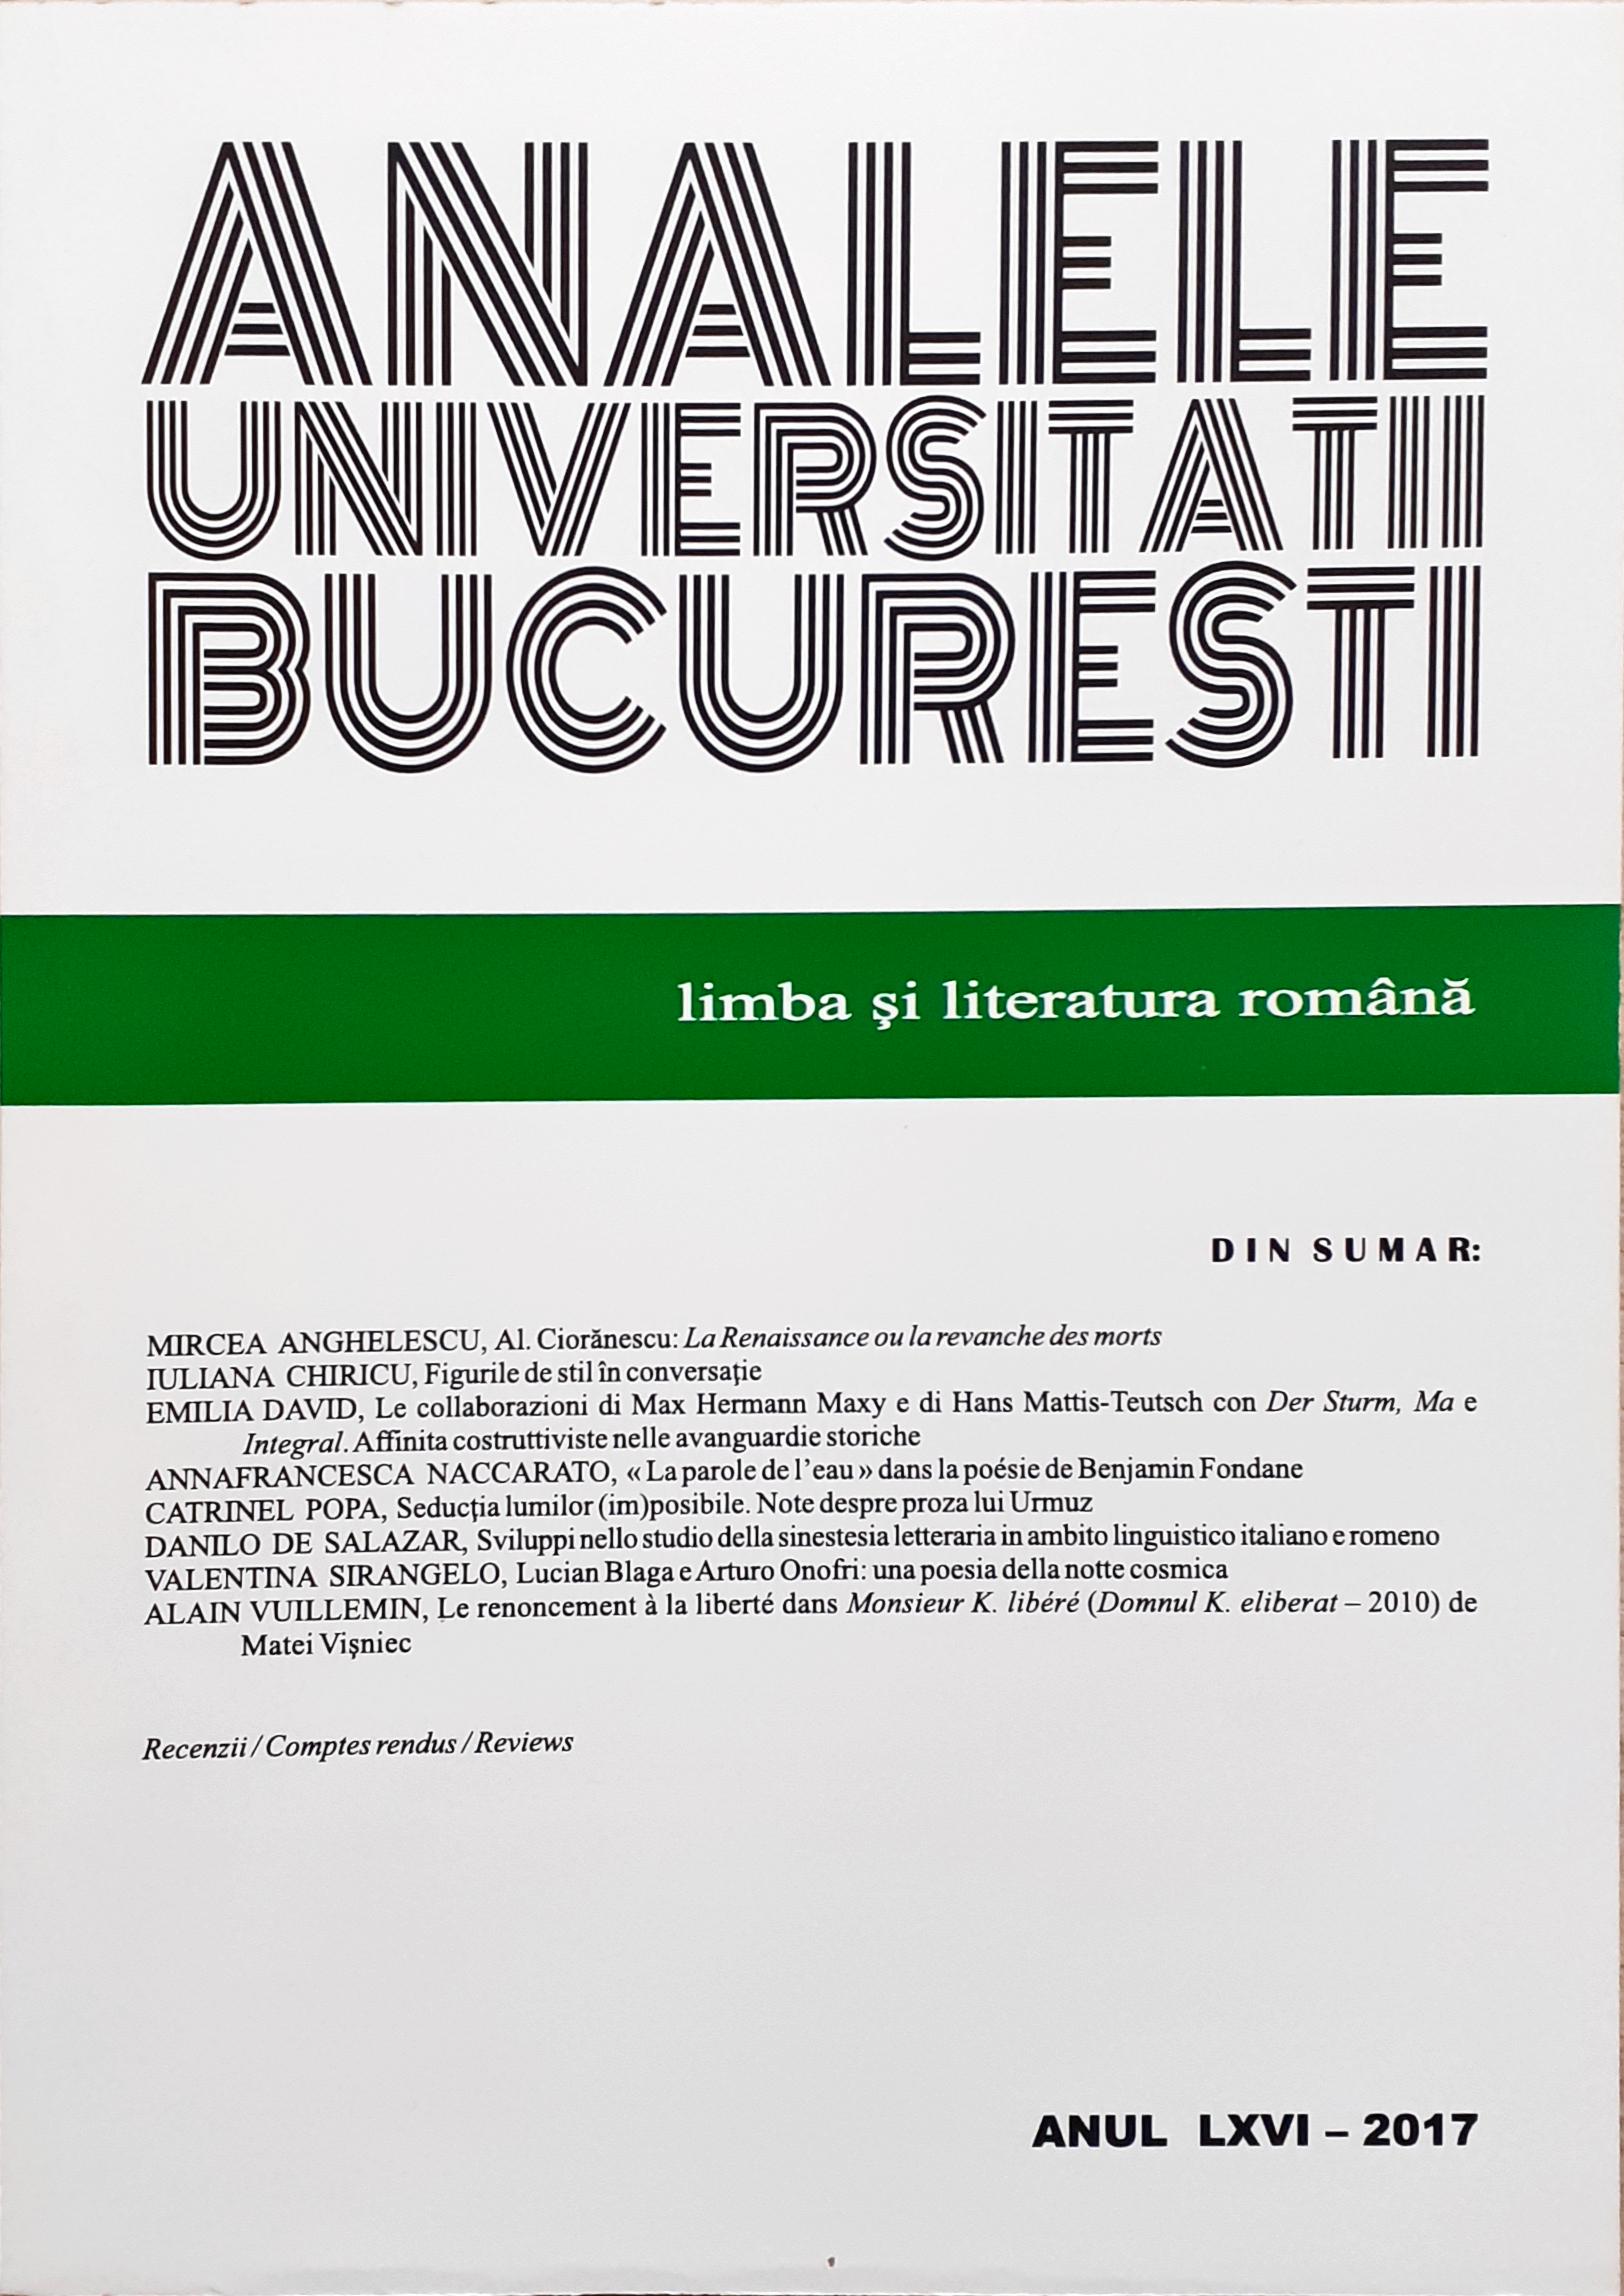 Sviluppi nello studio della sinestesia letteraria in ambito linguistico italiano e romeno